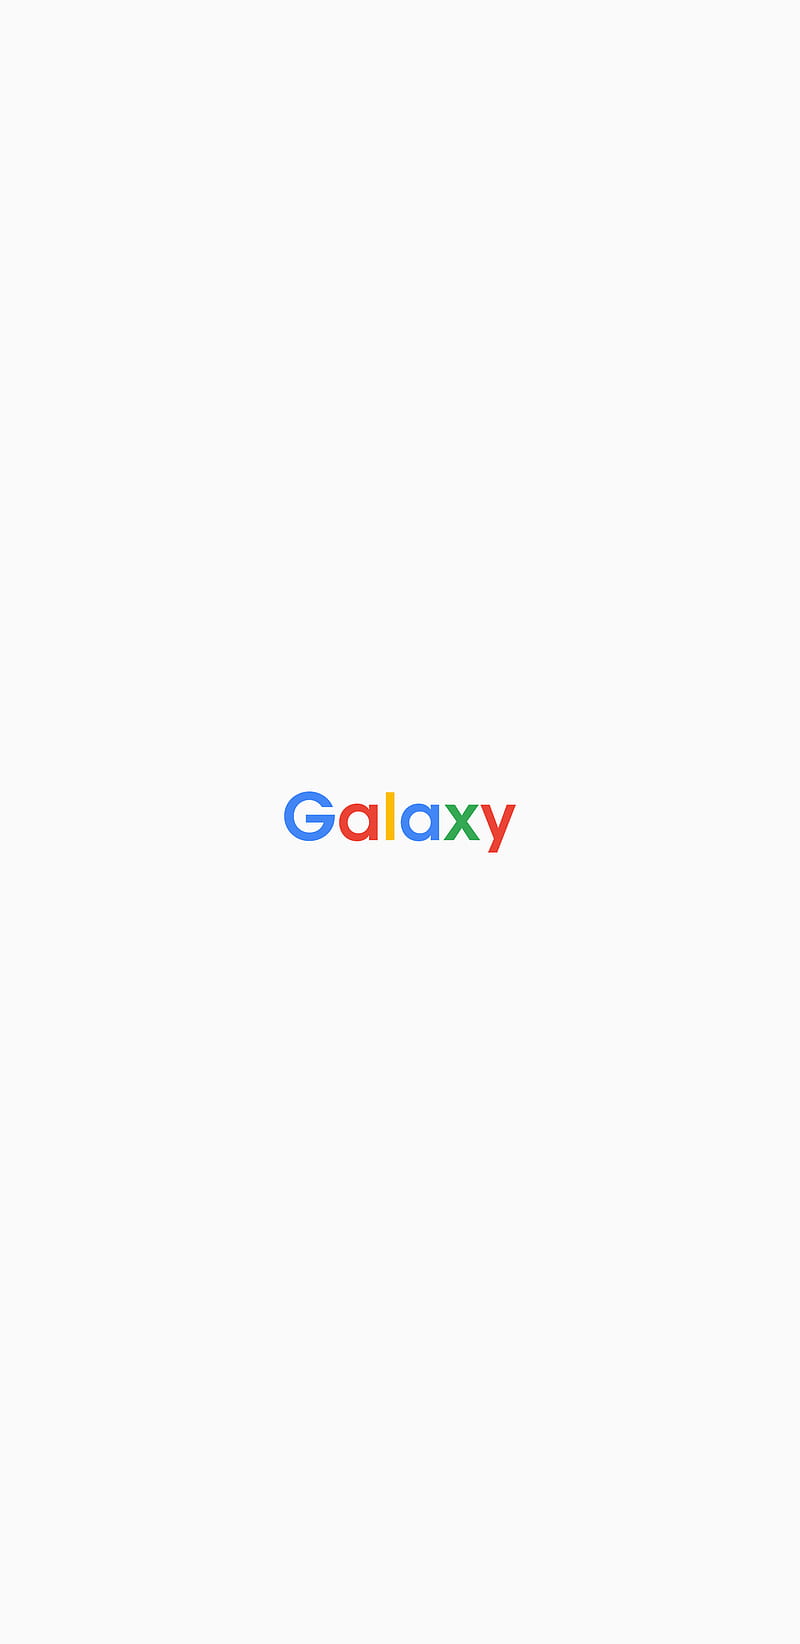 Samsung White Logo - LogoDix